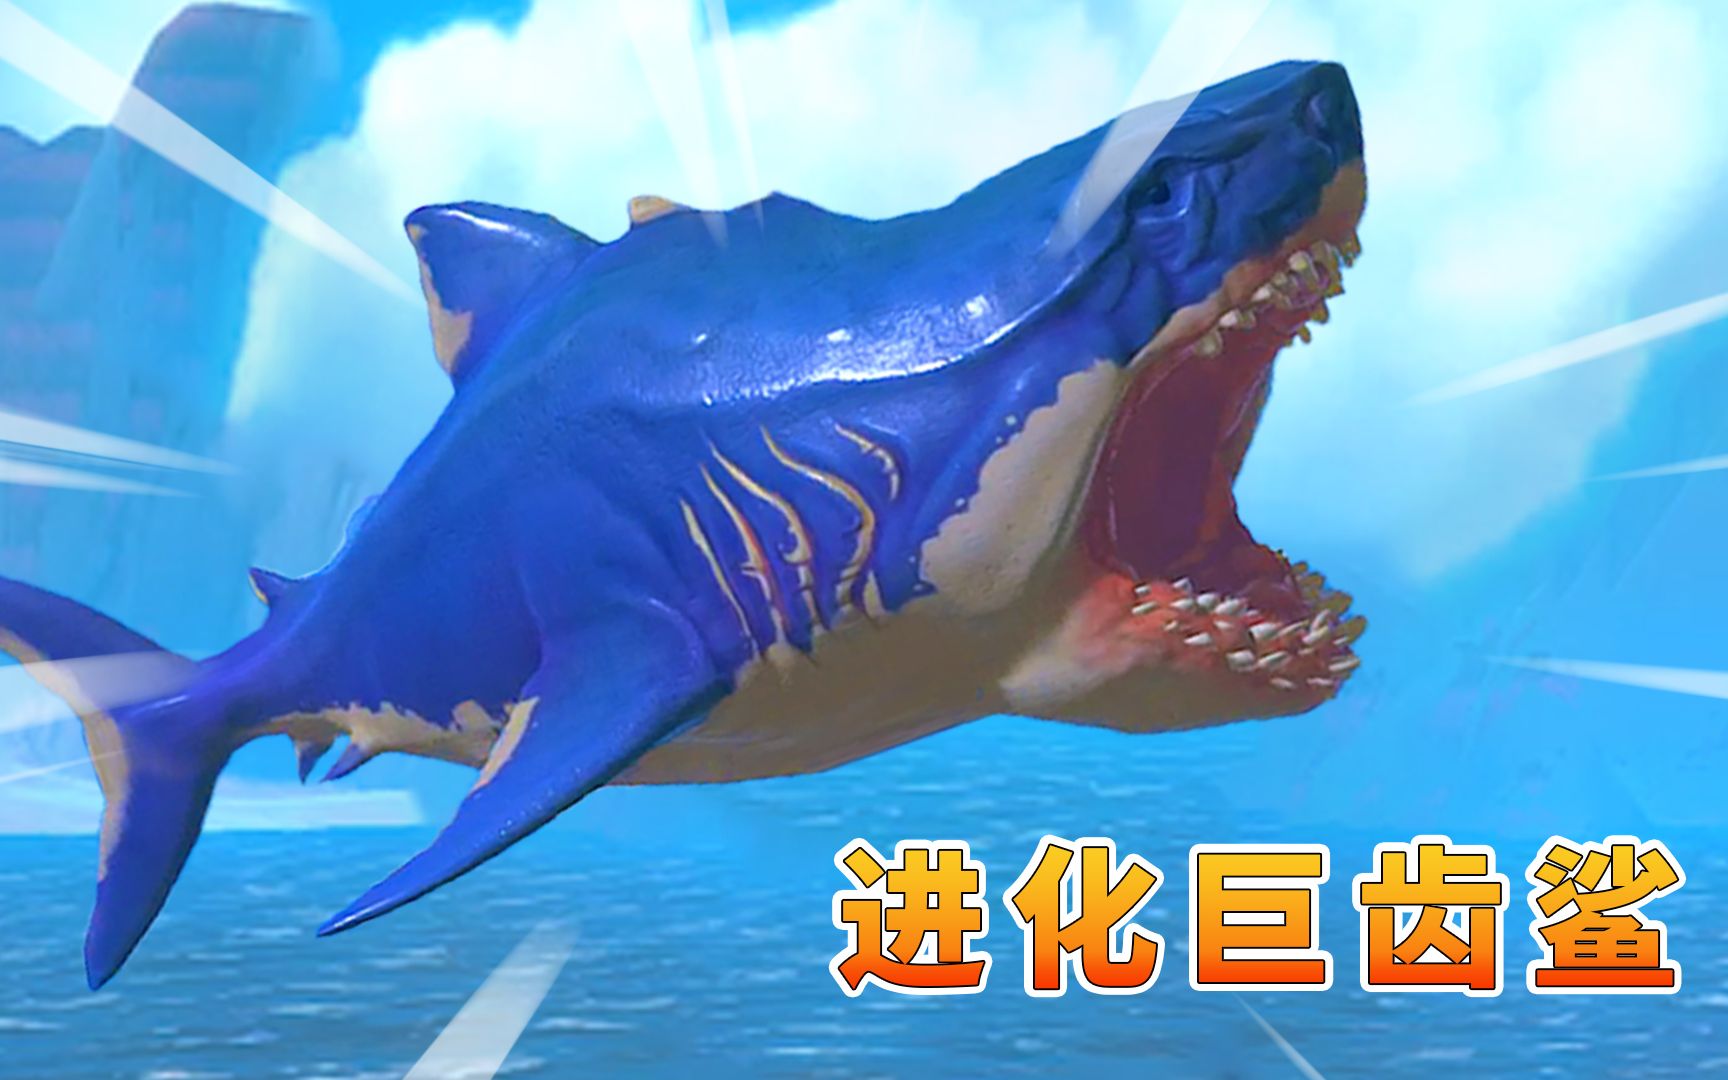 海底大猎杀133:图南进化巨齿鲨,准备找沧龙报仇